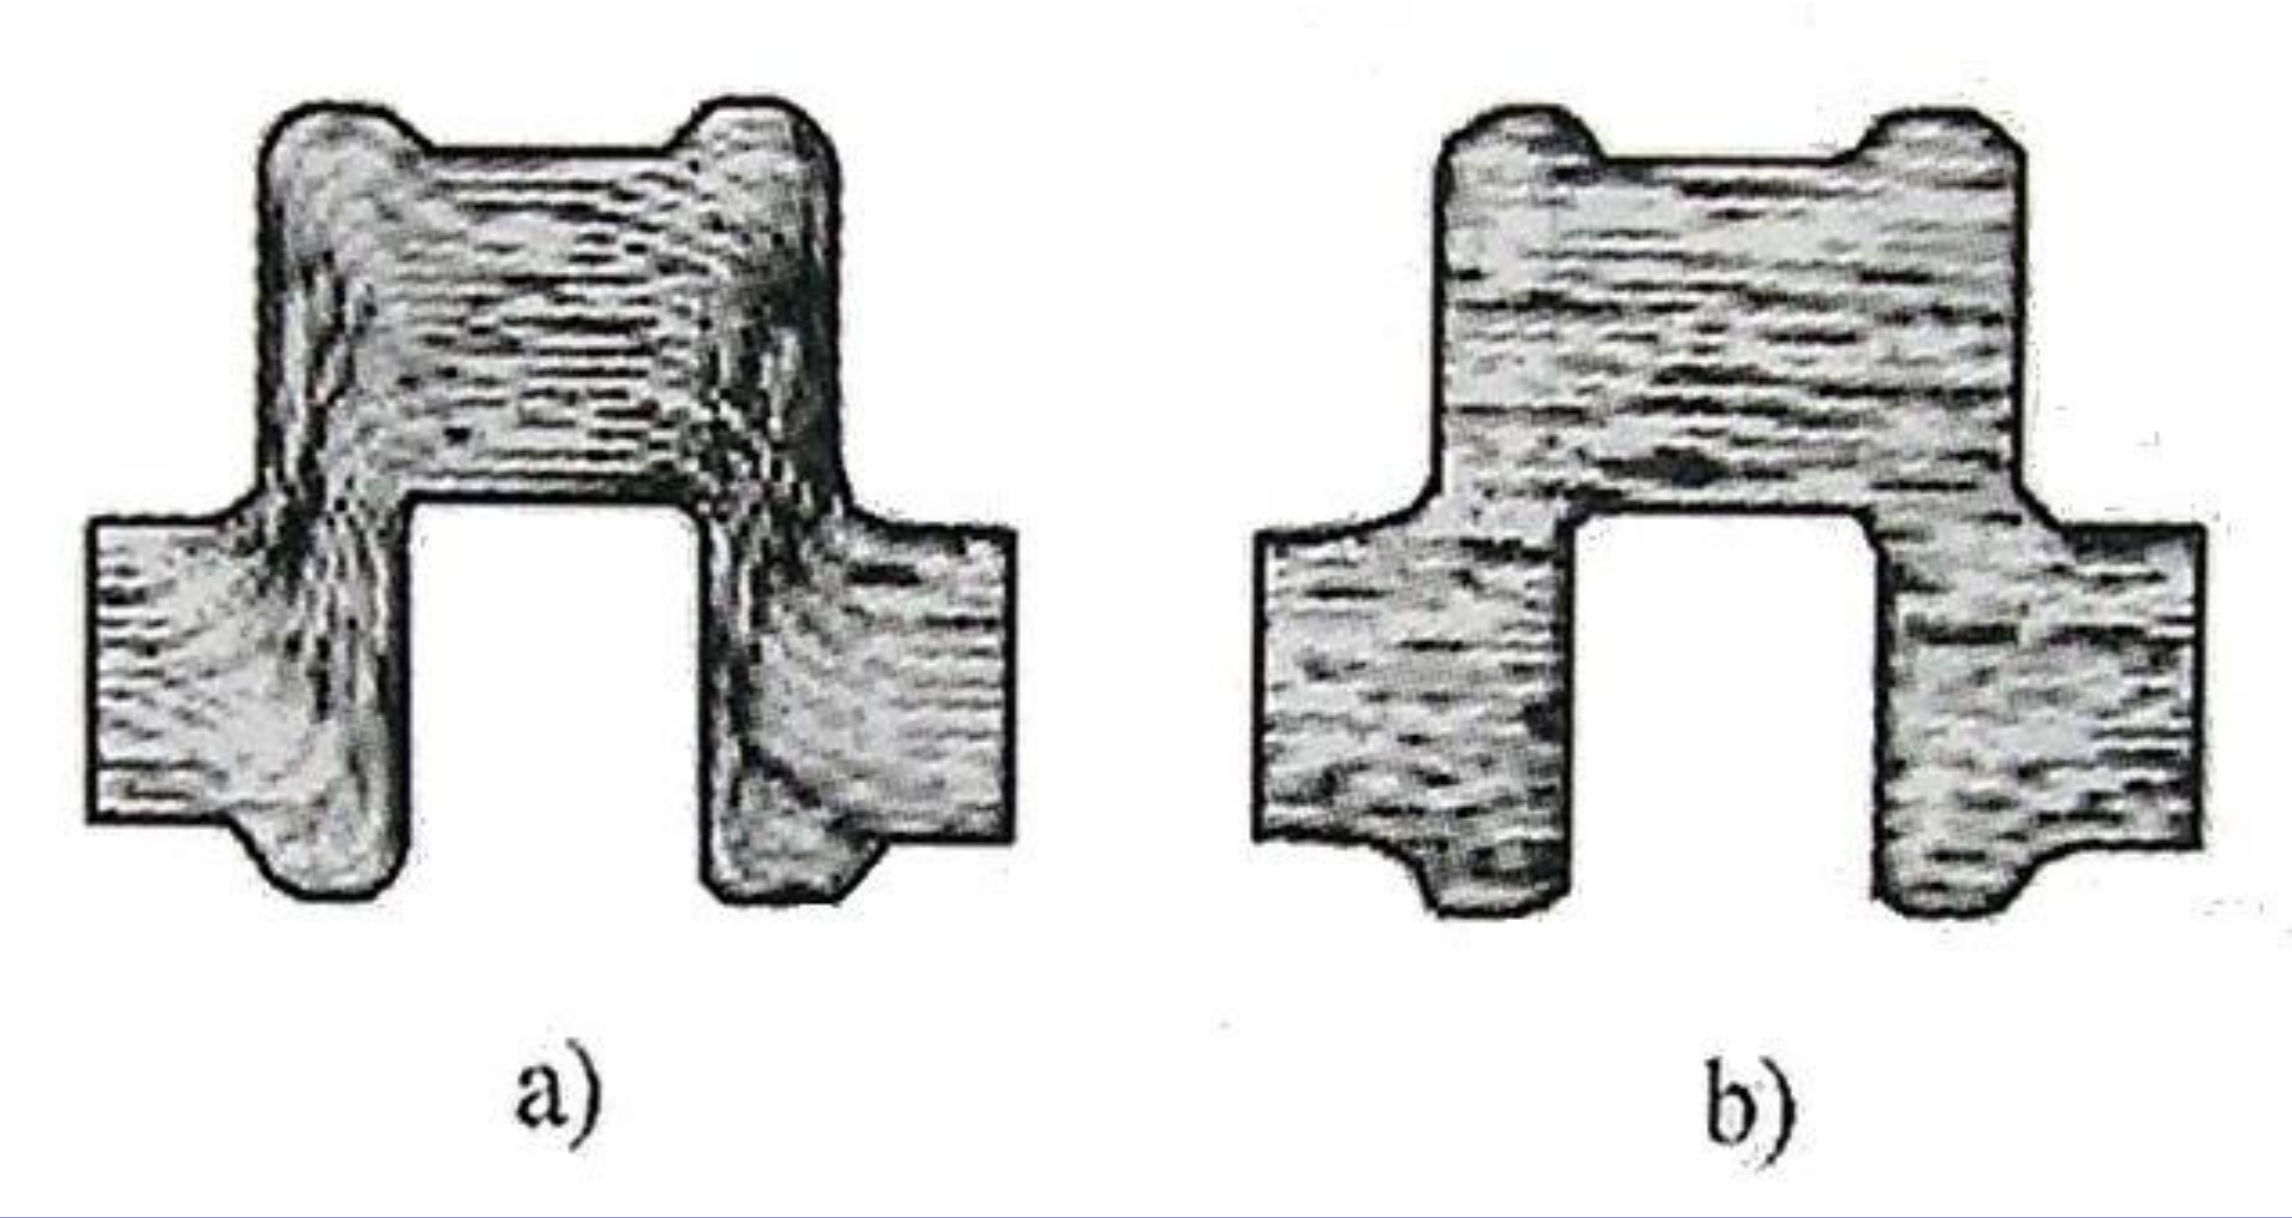 曲軸中的流線分布——a)鍛造變形；b)切削加工